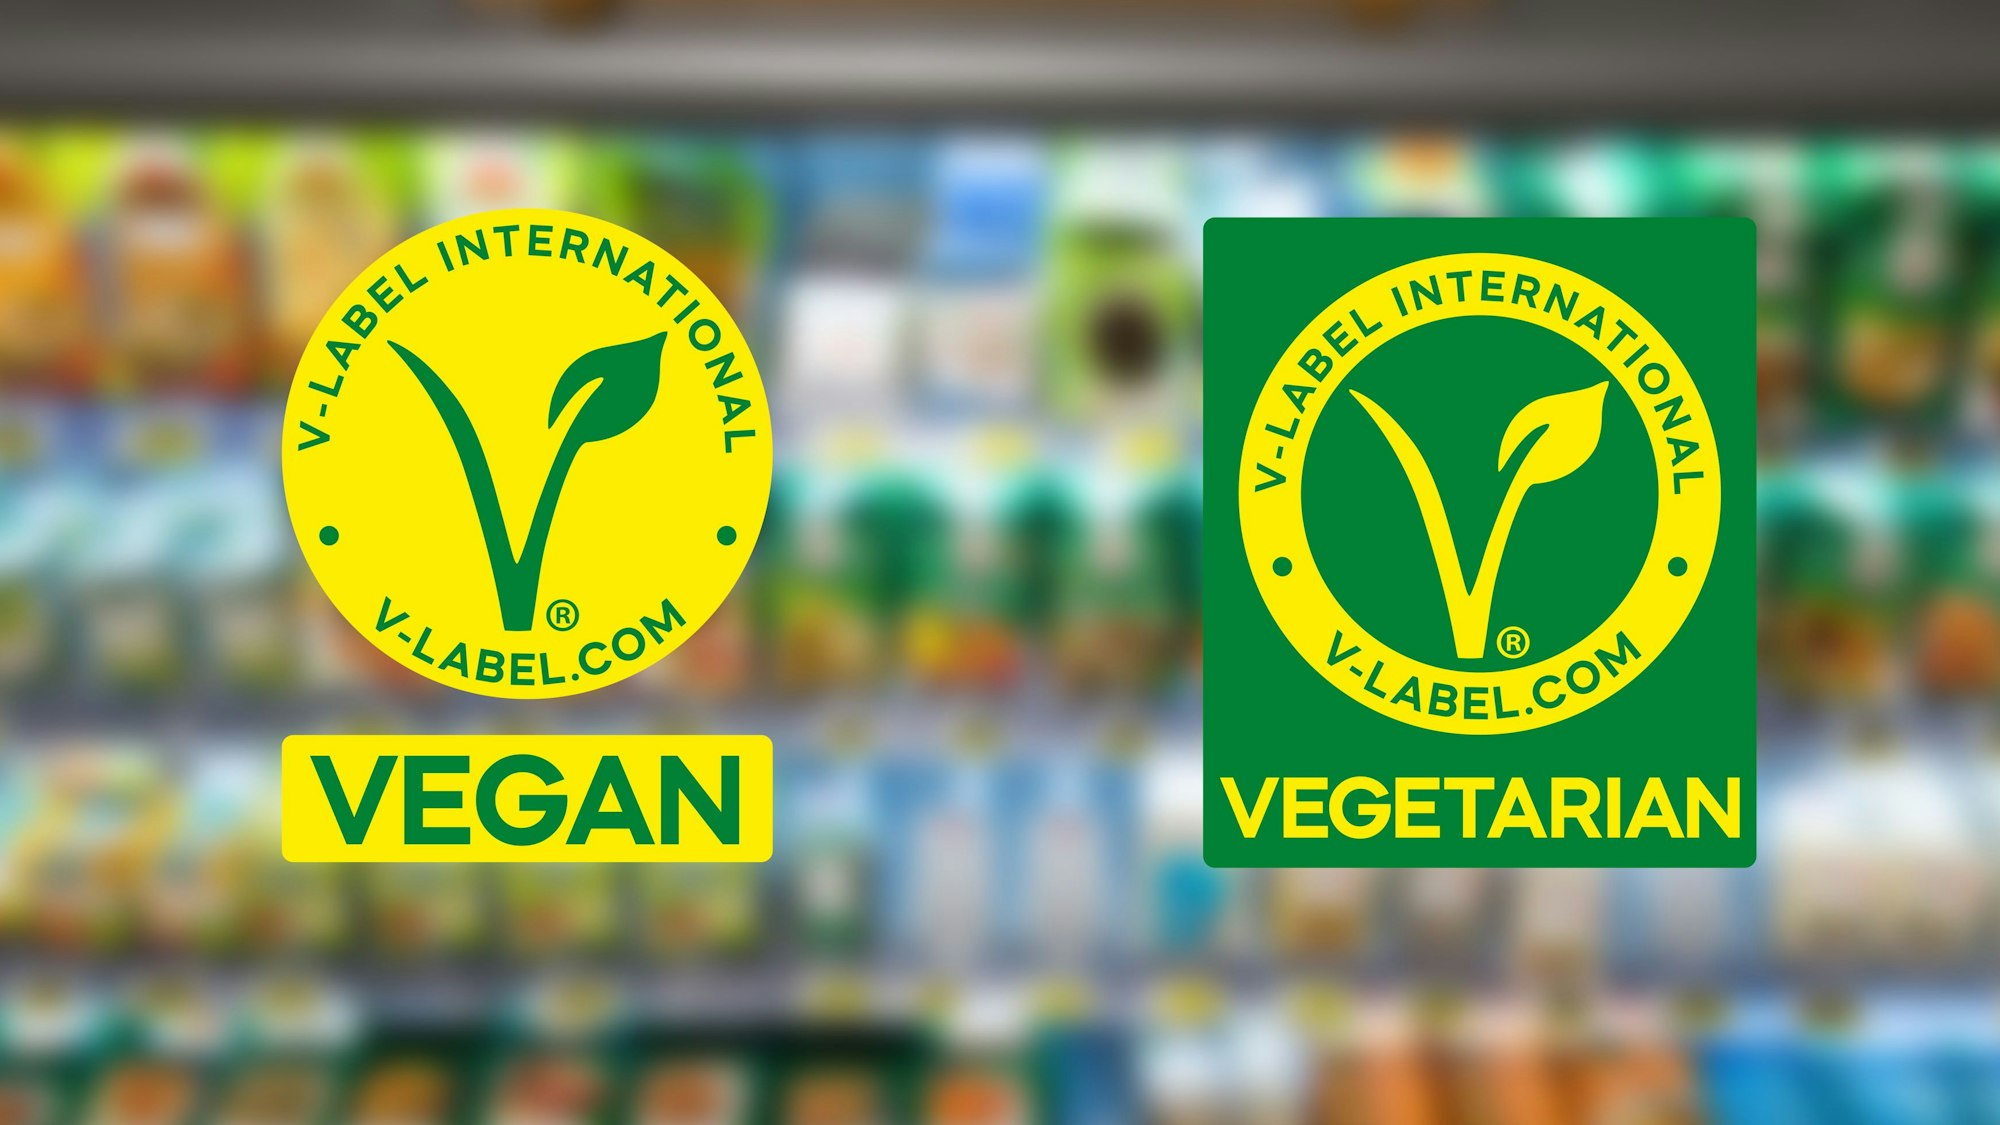 Die neuen Logos der Organisation V-Label sind vor einem verschwommenen Supermarkt-Regal zu sehen. Das eine Logo soll auf veganen, das andere auf vegetarischen Produkten zu sehen sein.